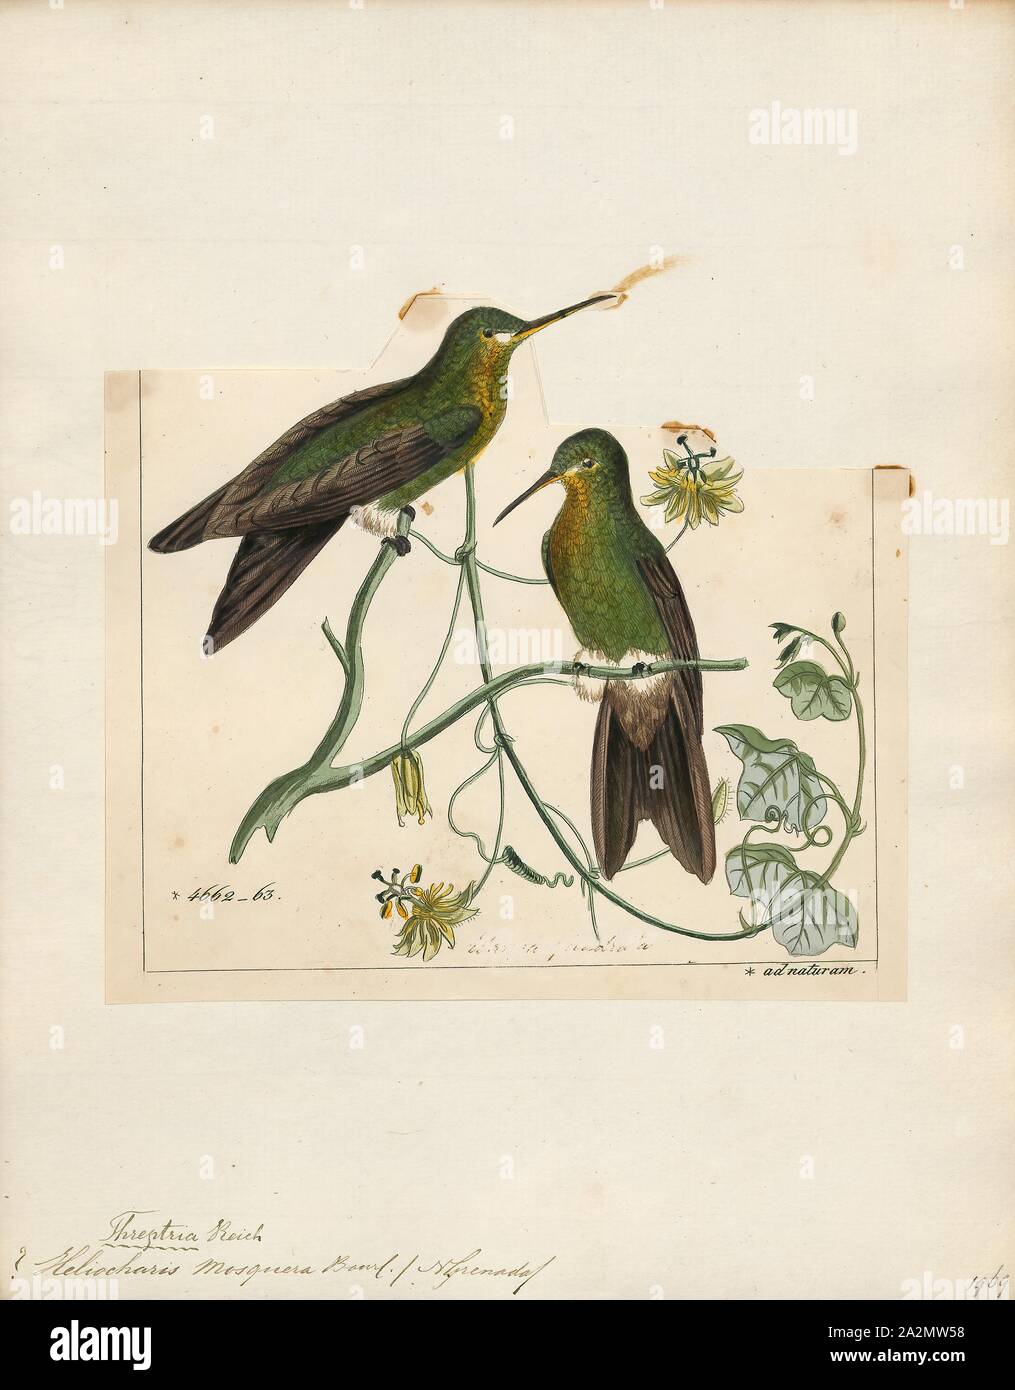 Hylocharis mosquera, Drucken, Hylocharis ist eine Gattung von Hummingbird, in der Familie der., 1820-1860 Stockfoto